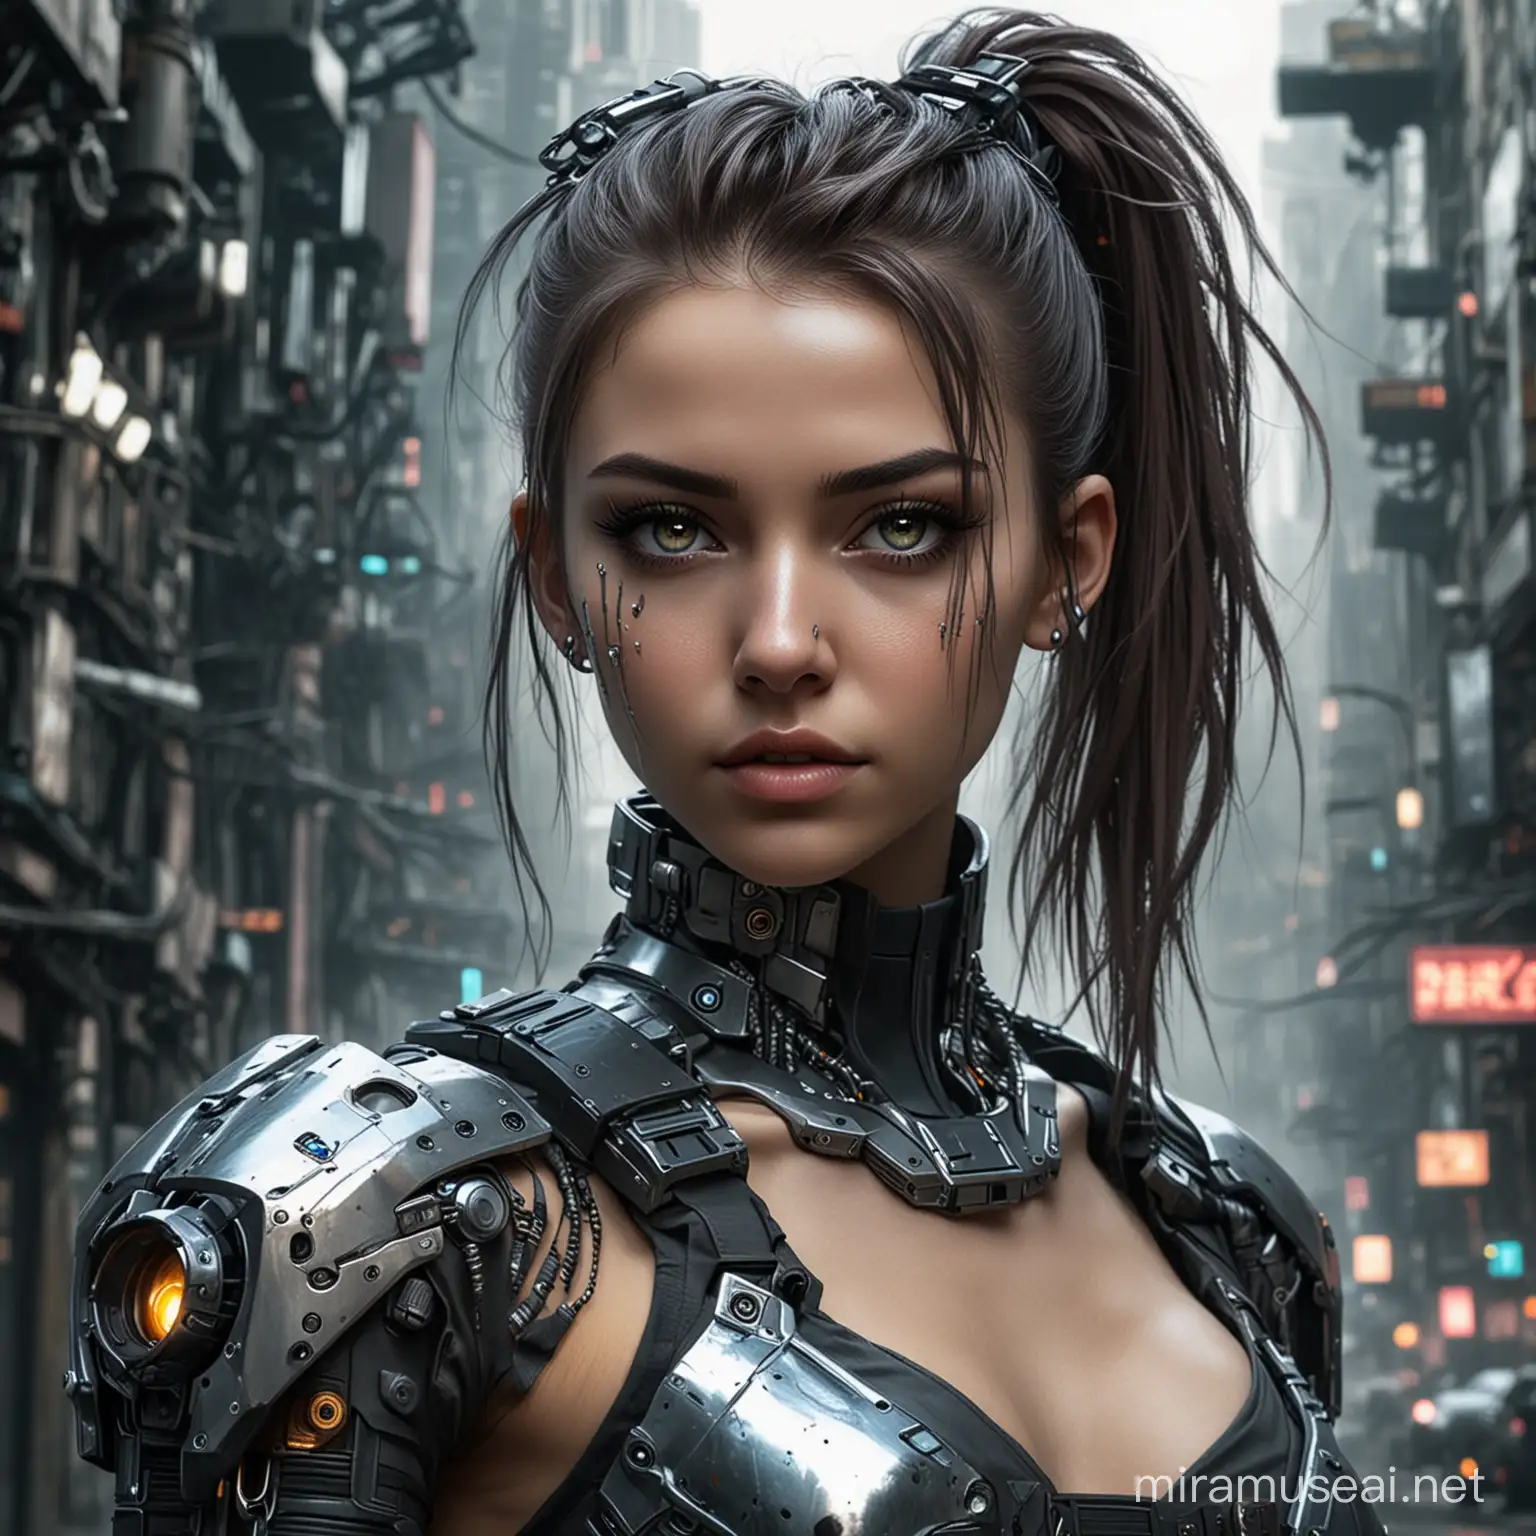 Metallic Cyberpunk Dystopian Girl in Urban Setting